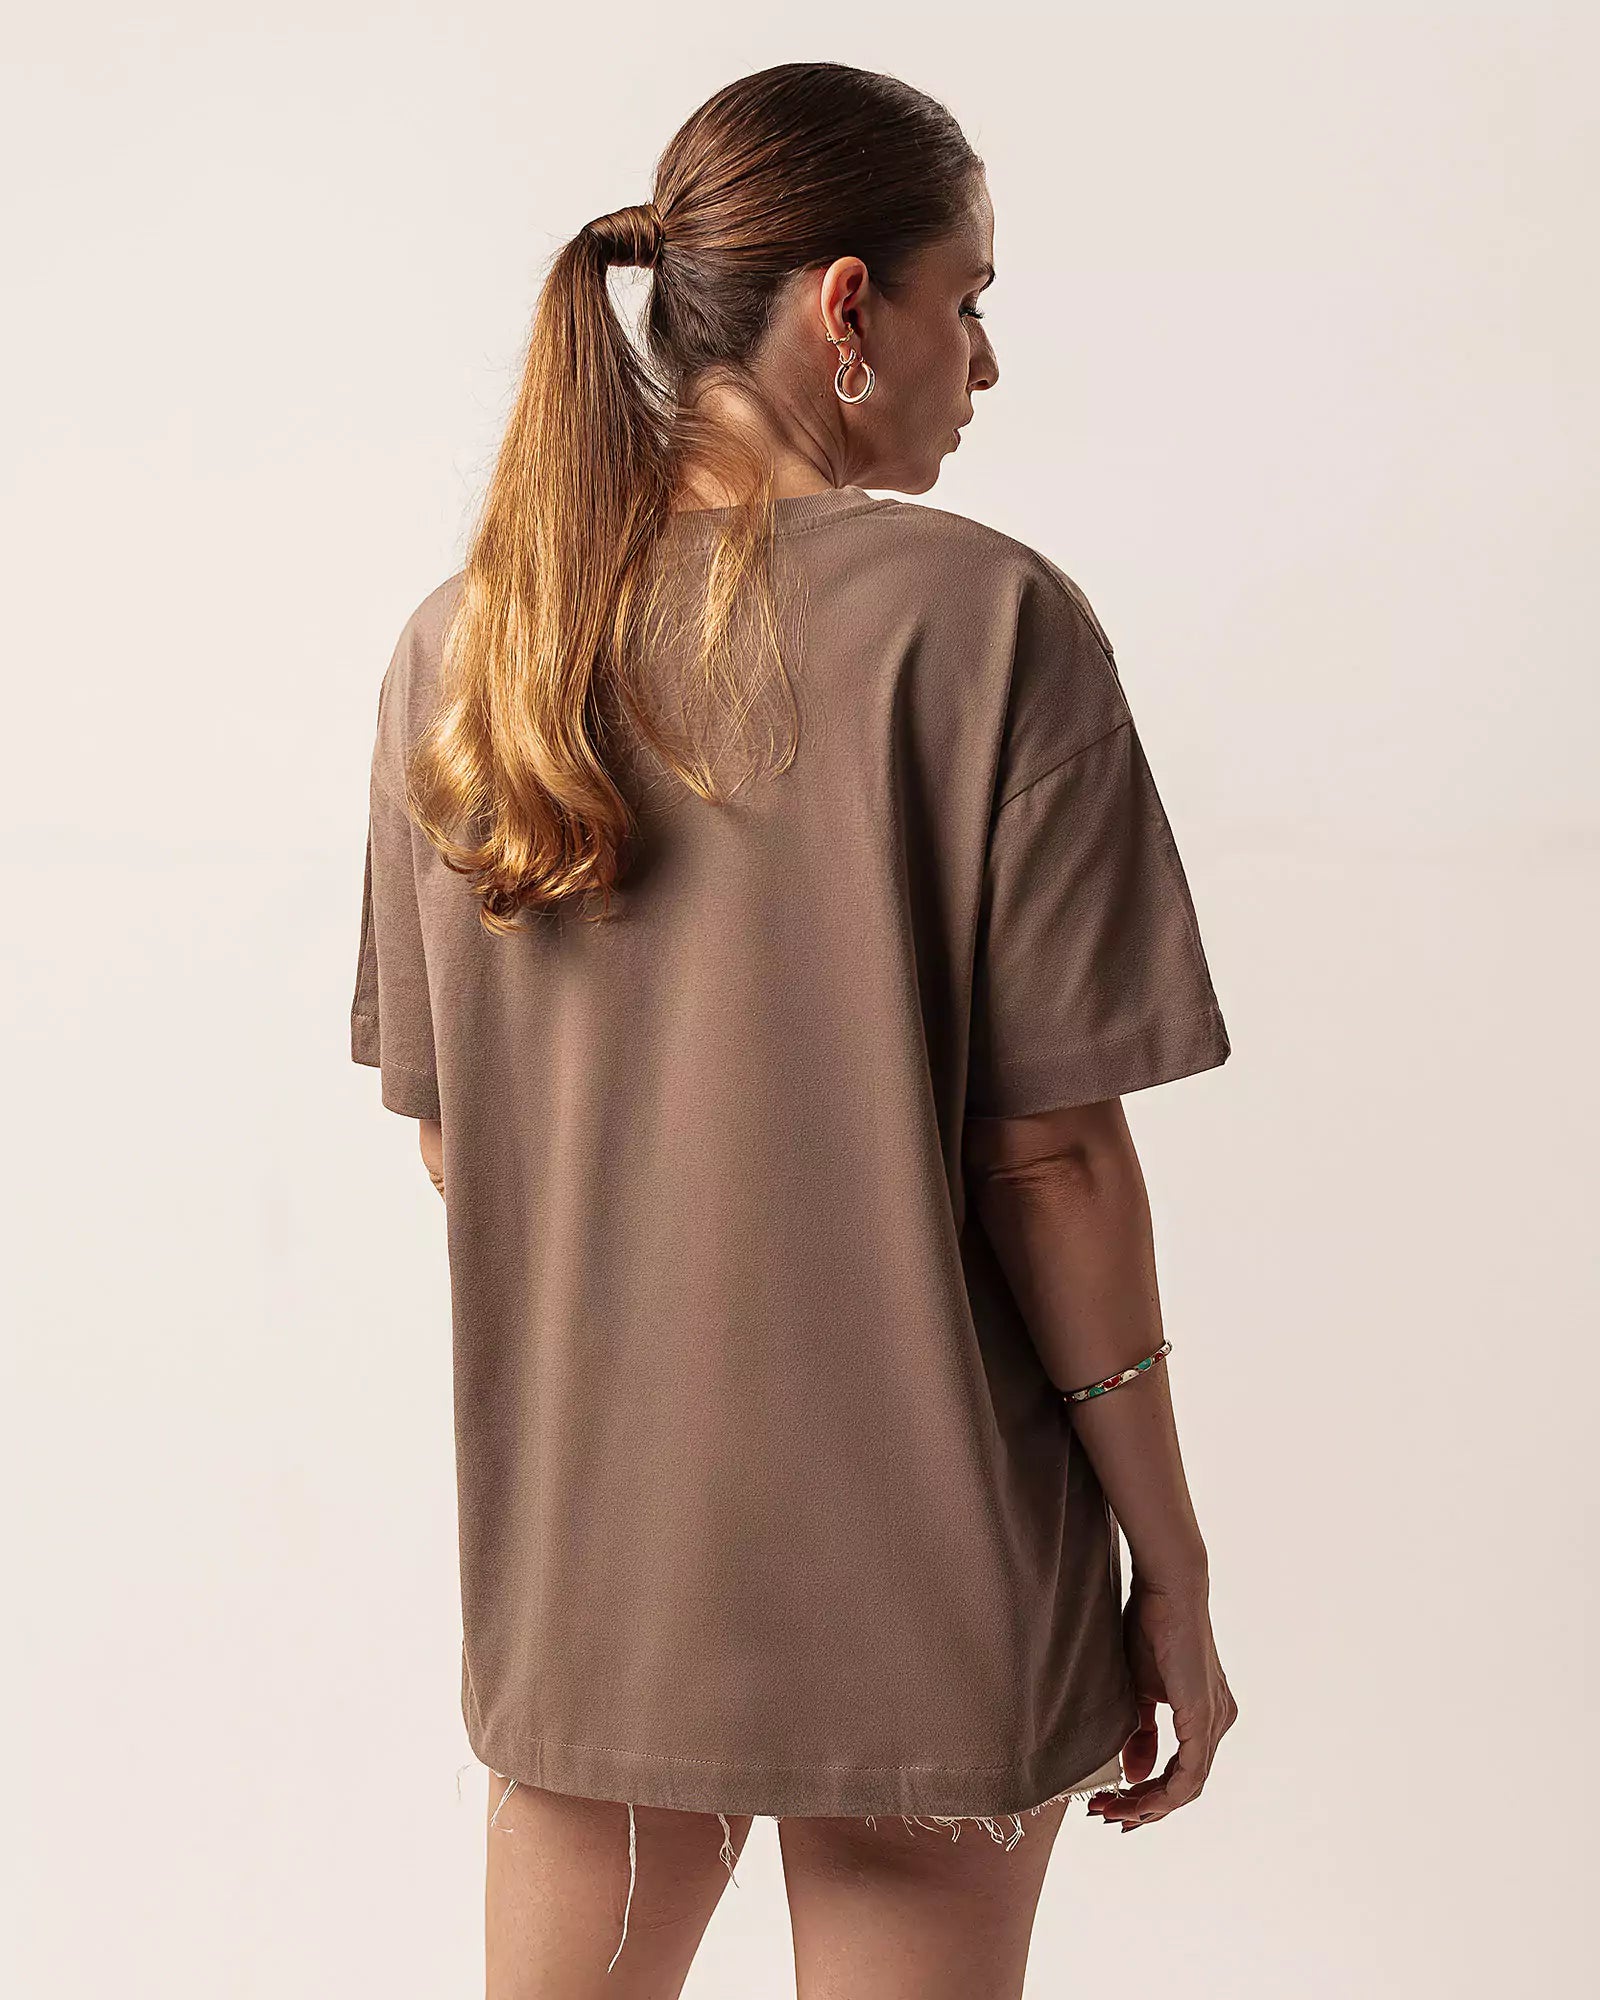 T-shirt Oversized de Algodão Orgânico Marrom. Compre online moda sustentável e atemporal na Minimadeia. Roupas femininas estilosas, básicas e sustentáveis. Foto produto 06